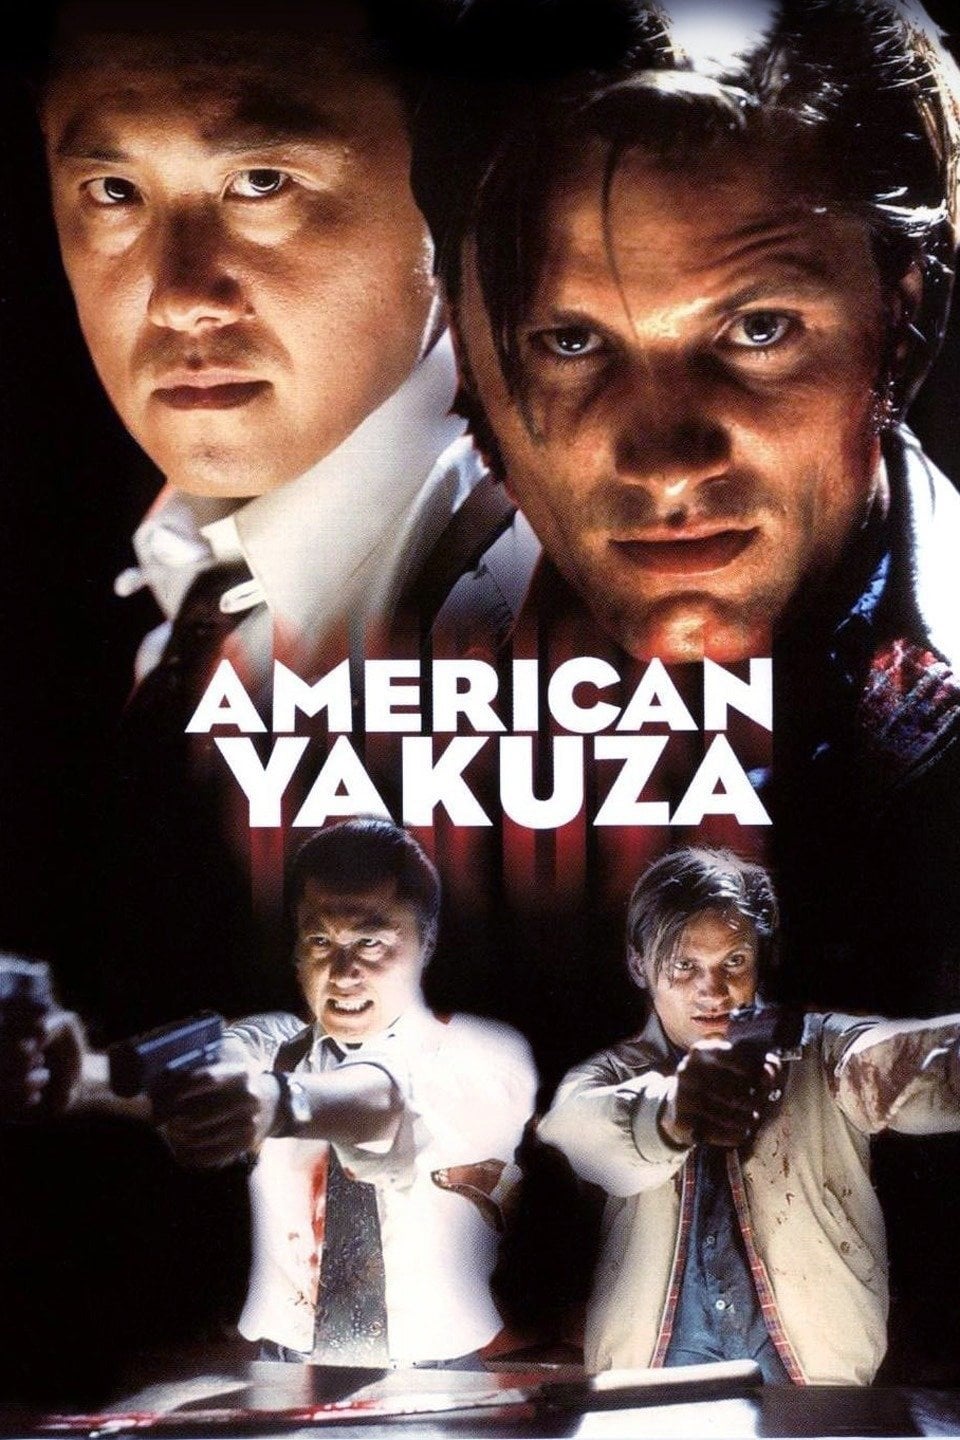 Plakat von "American Yakuza"